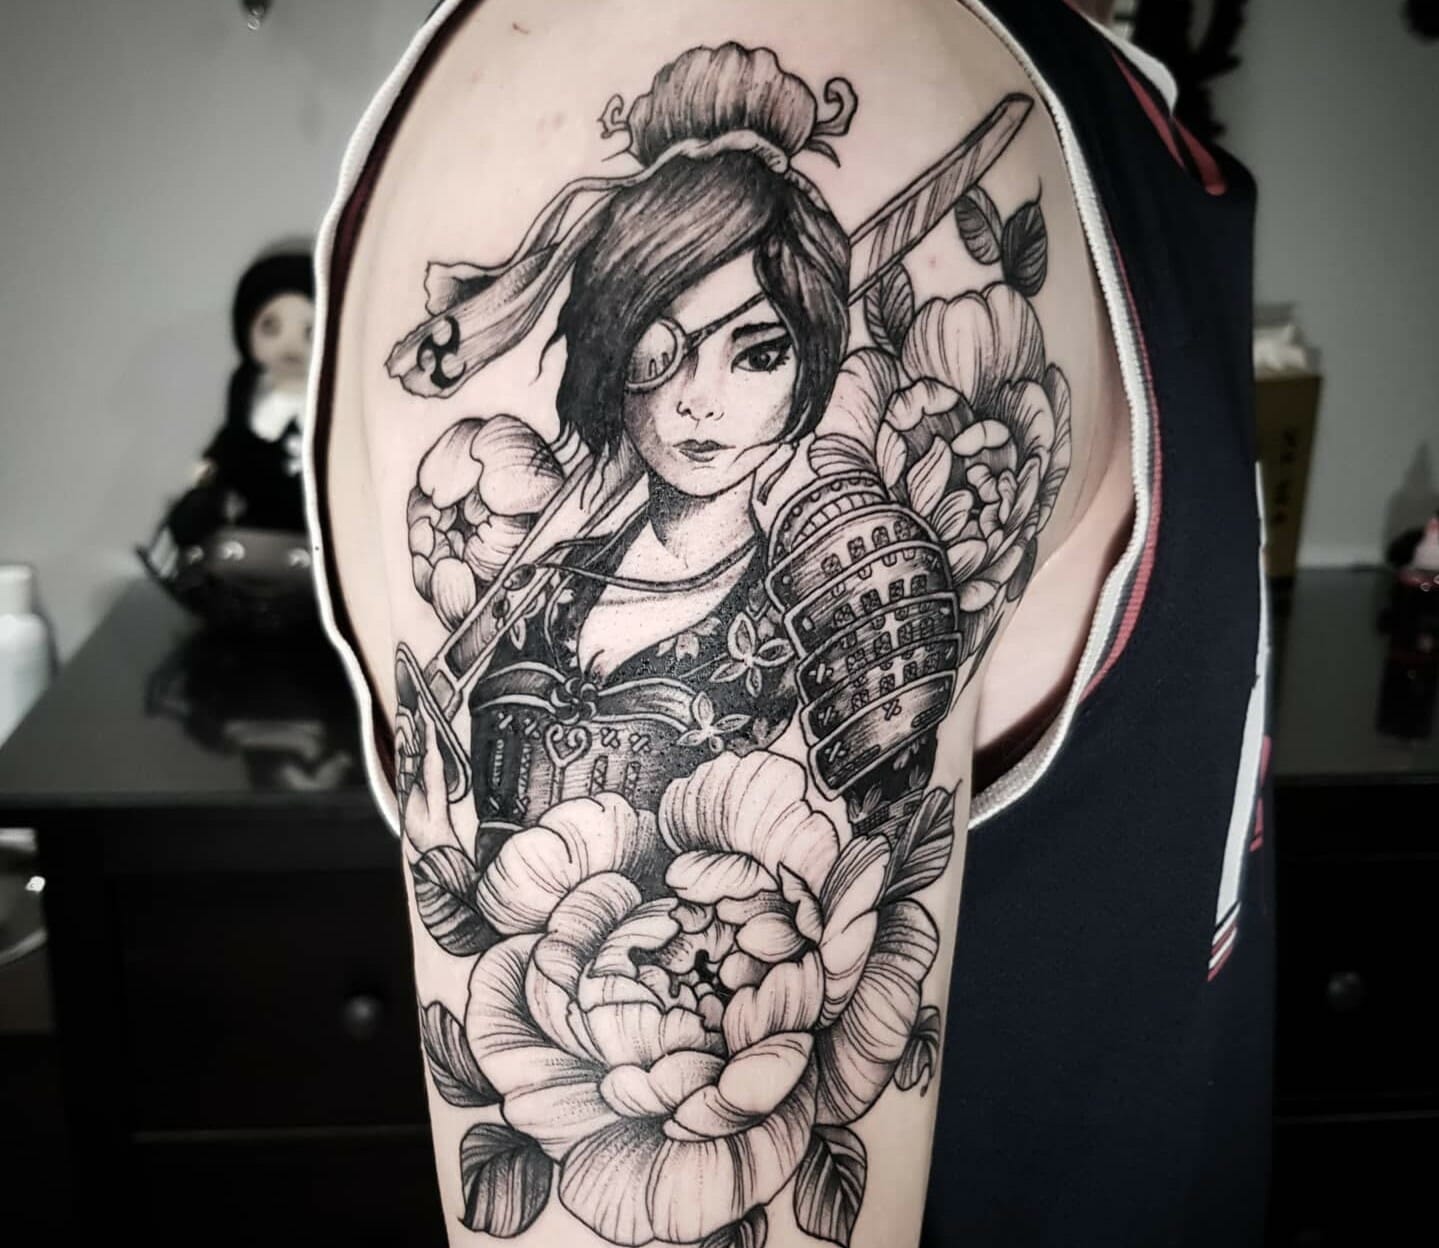 Warrior female samurai tattoo